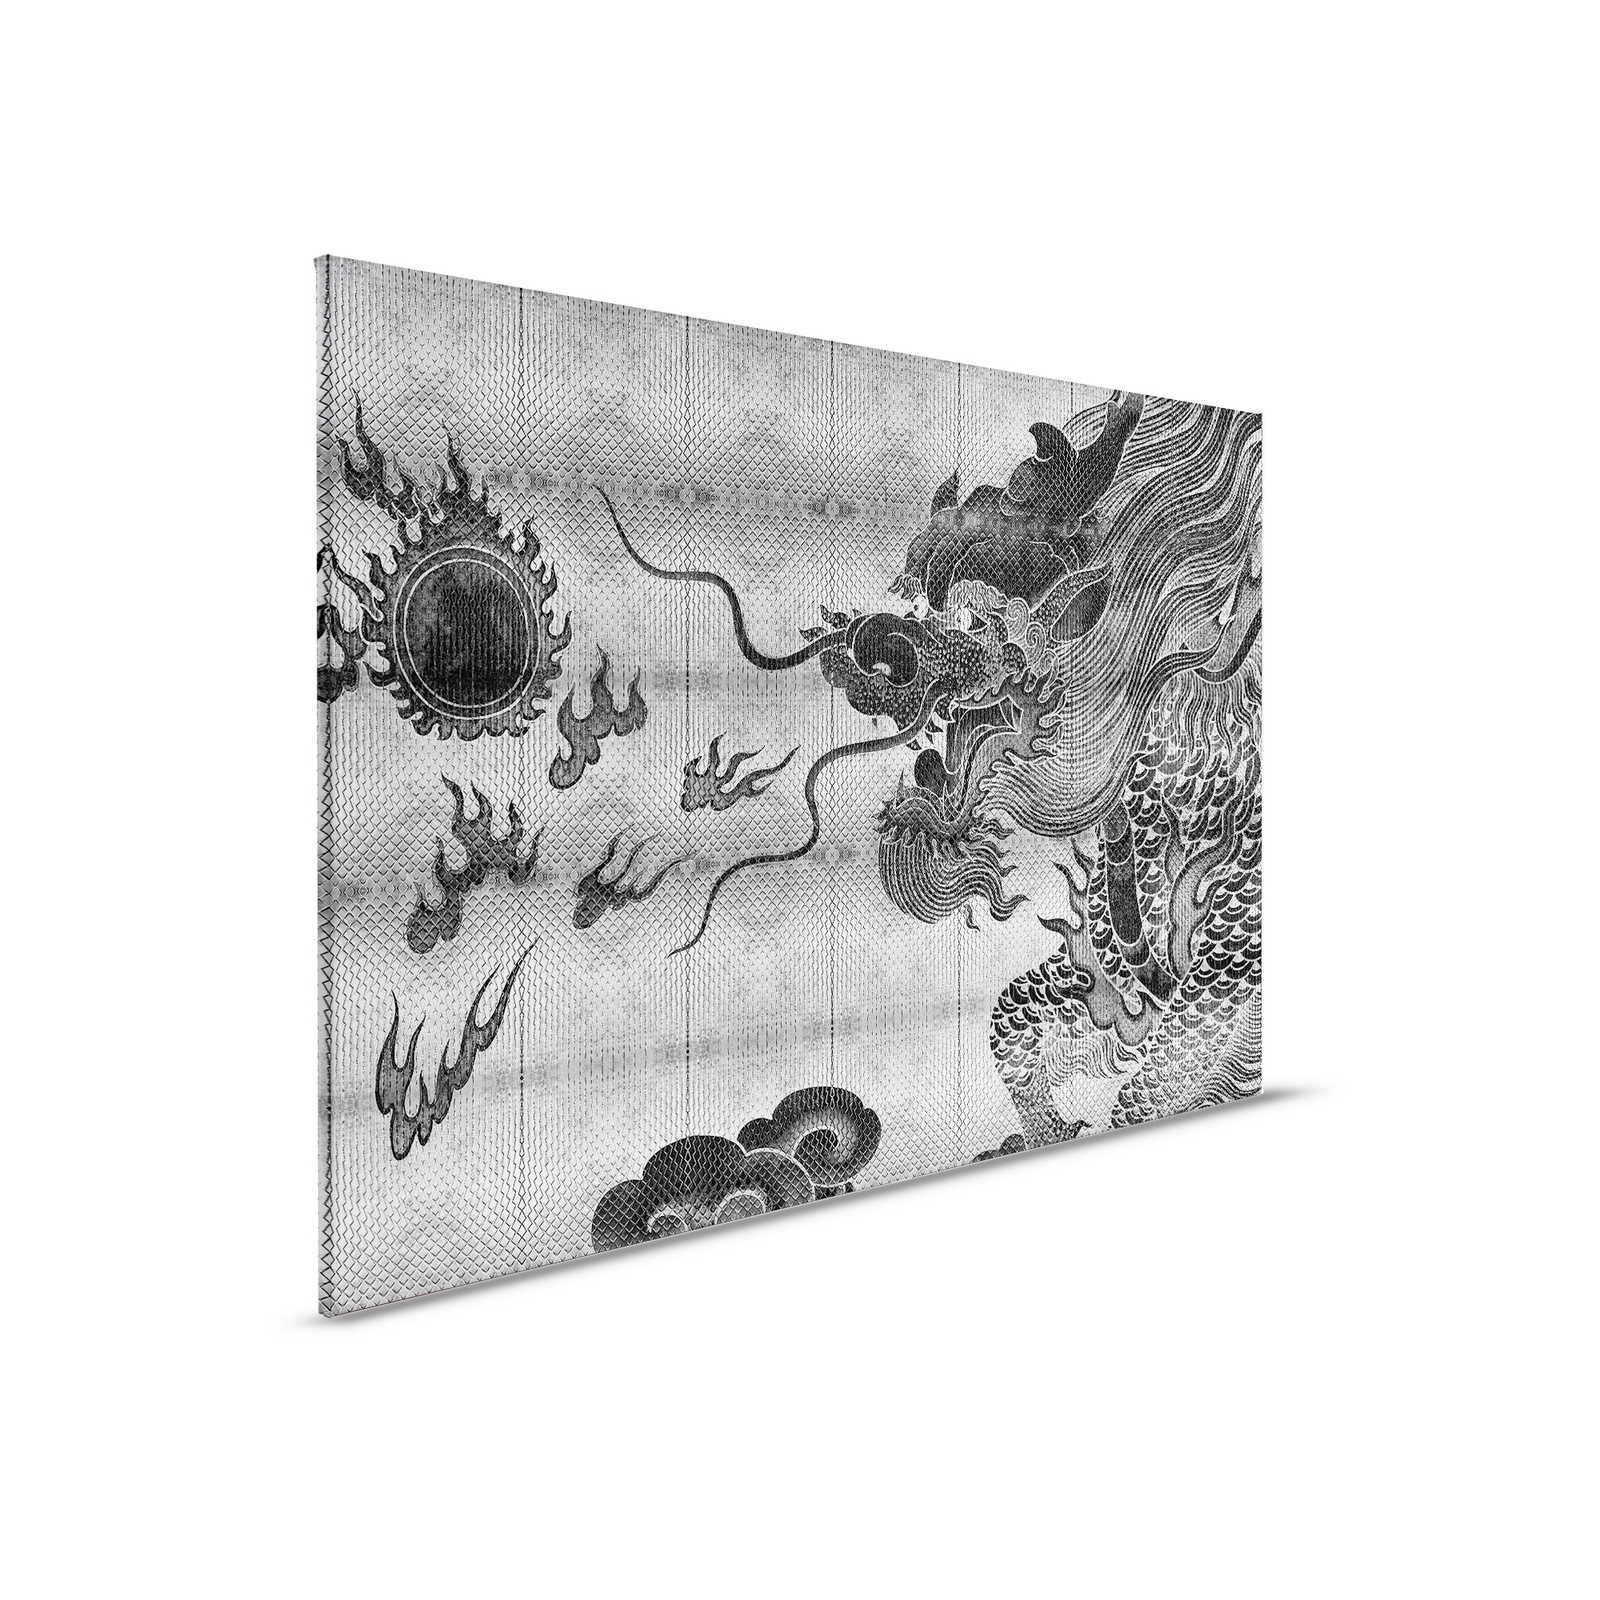 Shenzen 3 - Dragon toile argent métallique style asiatique - 0,90 m x 0,60 m
